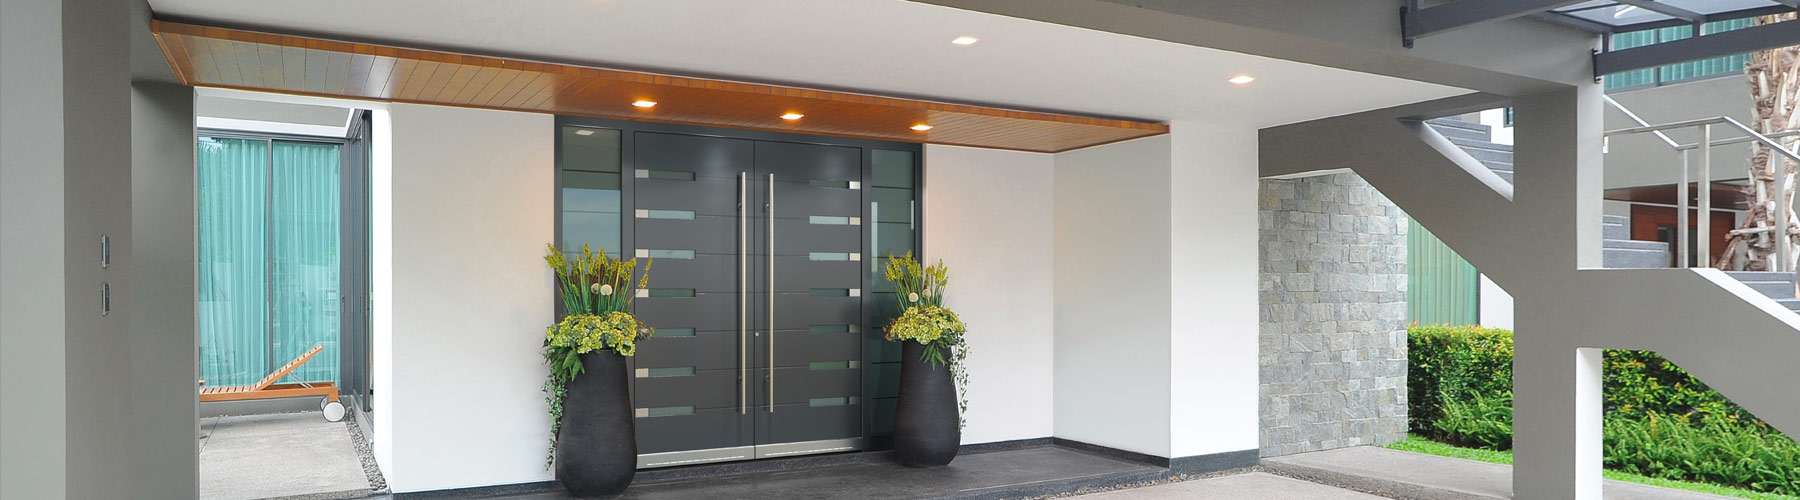 Altola Luxury Entry Doors